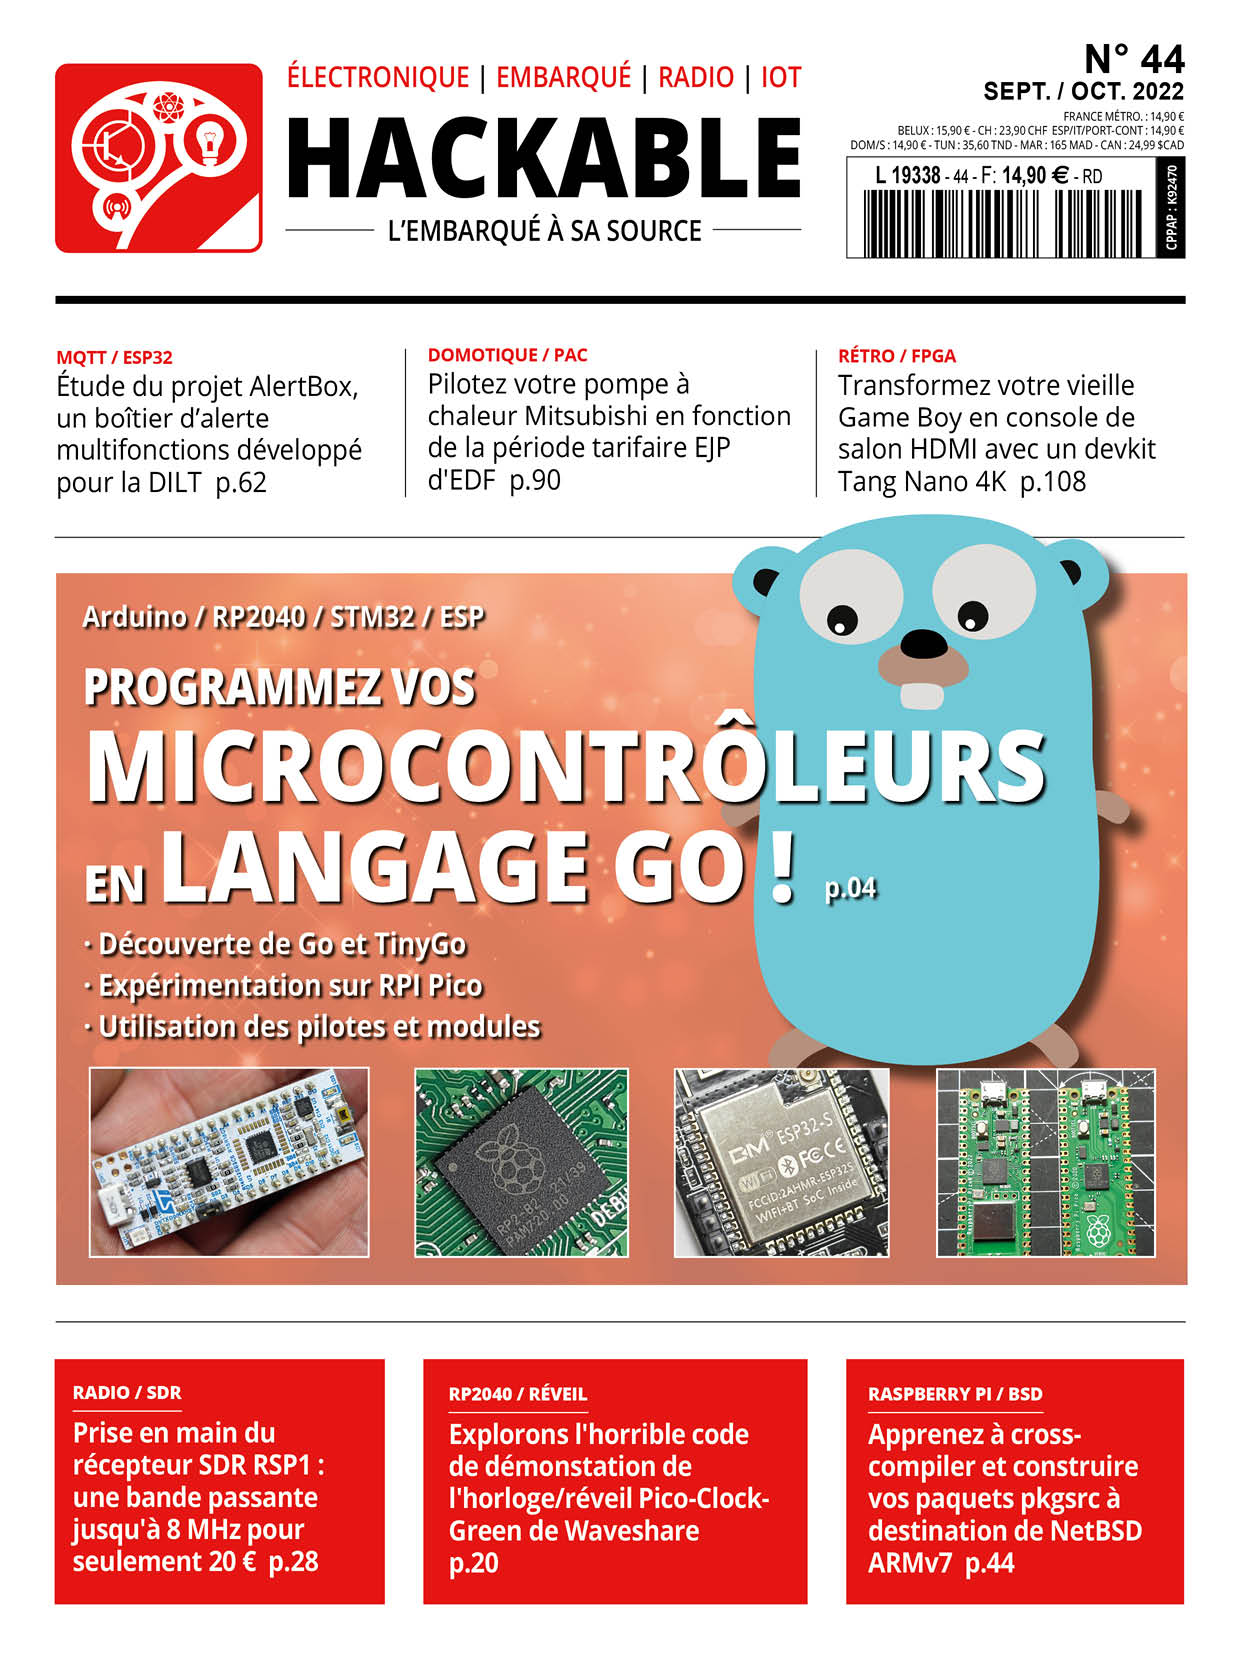 Programmez vos microcontrôleurs en langage Go !